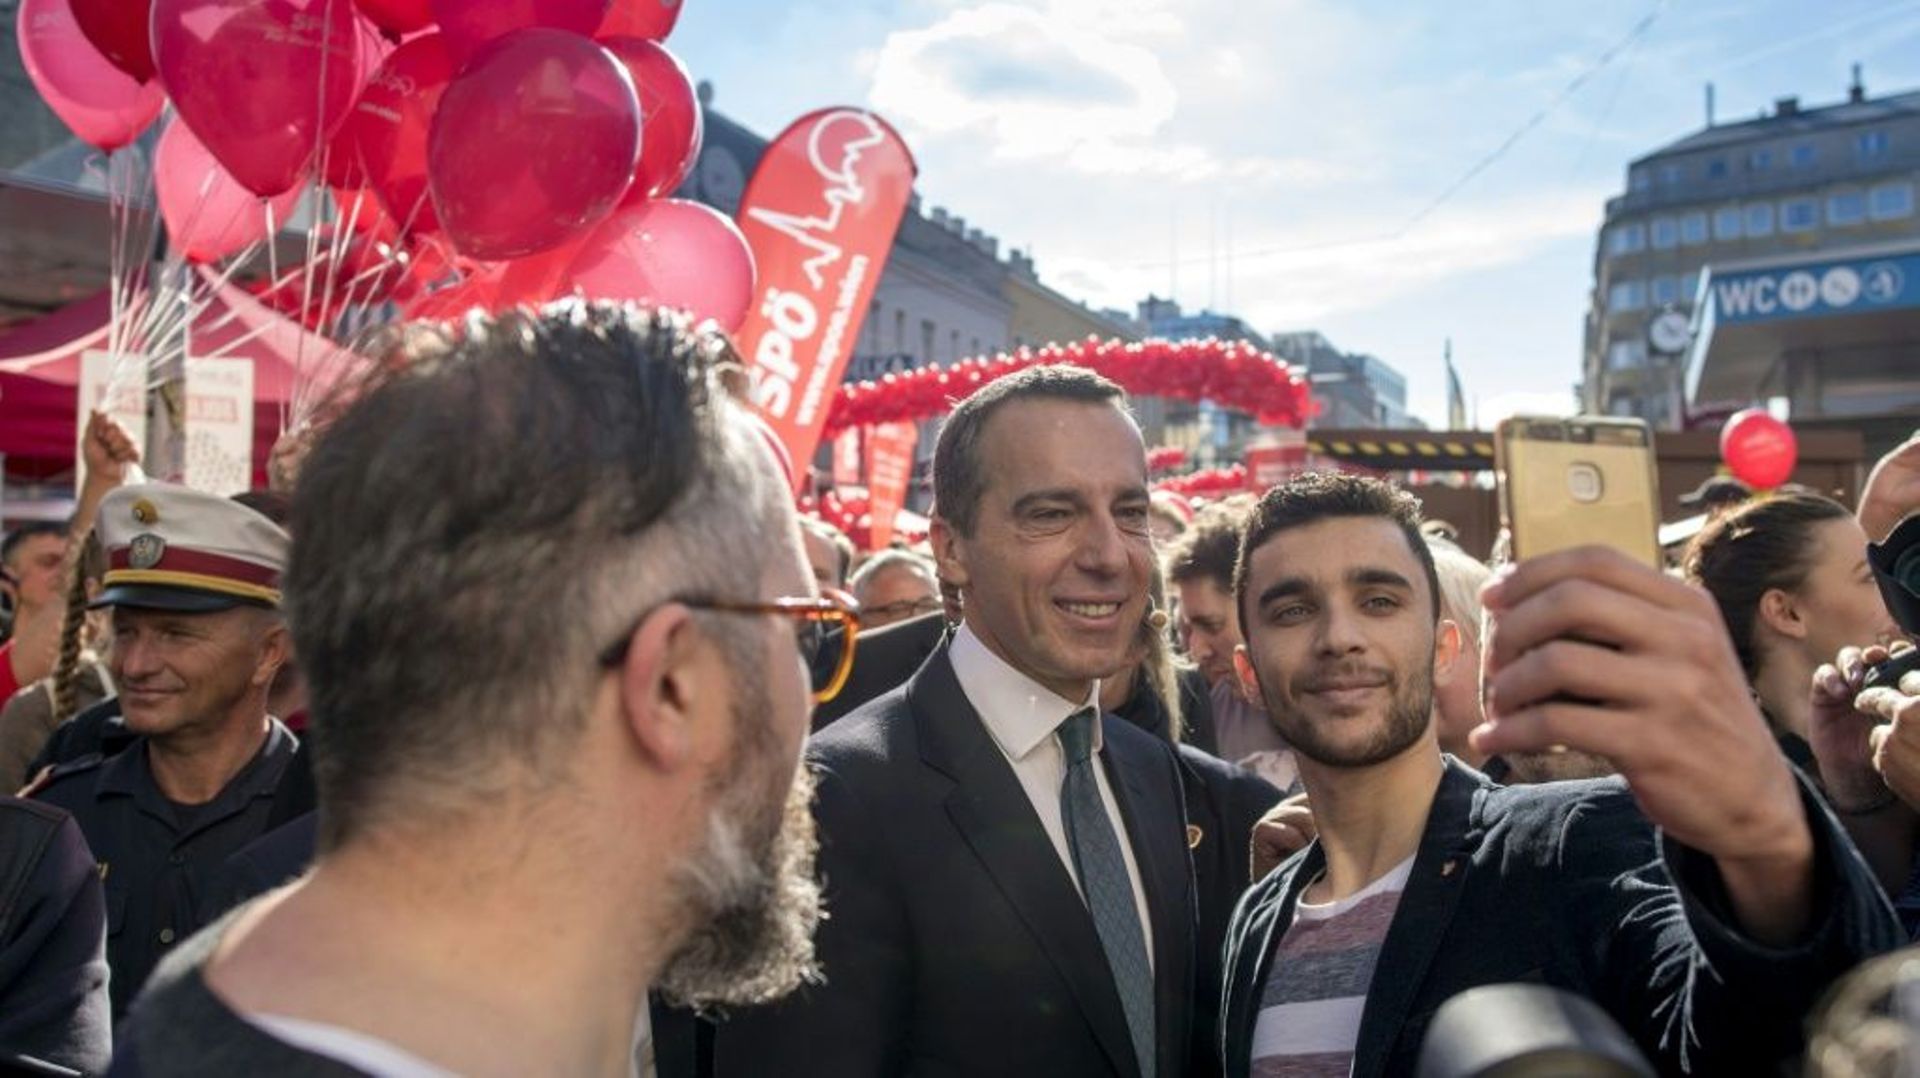 Autriche: dernière mêlée électorale, l'extrême droite incontournable